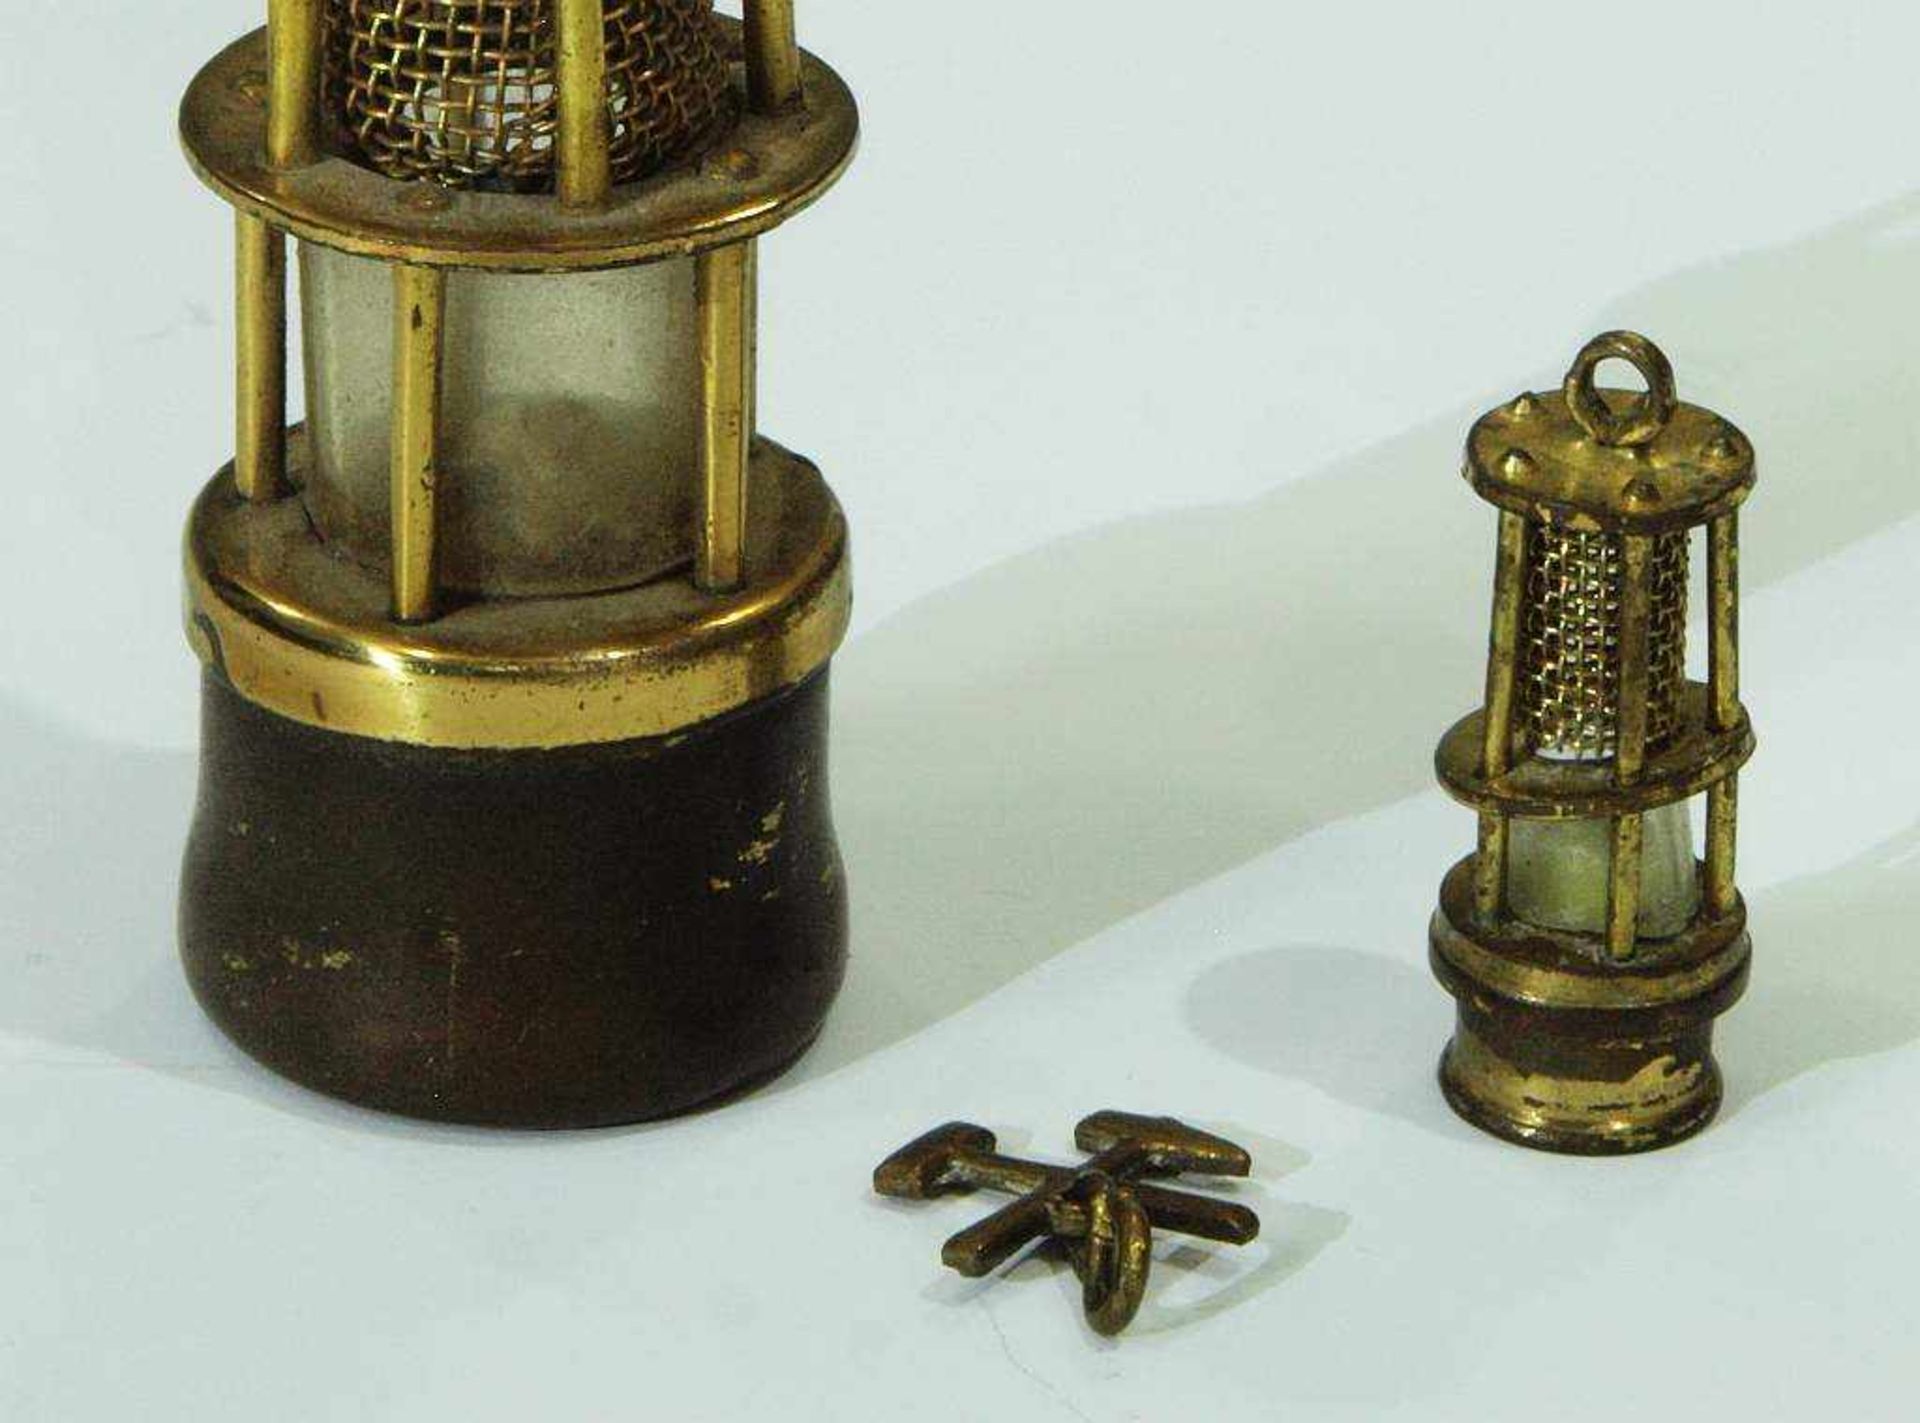 Zwei Miniatur-Grubenlampen. Zwei Miniatur-Grubenlampen. Messing und Glas, jeweils mit Tragehaken - Bild 3 aus 3